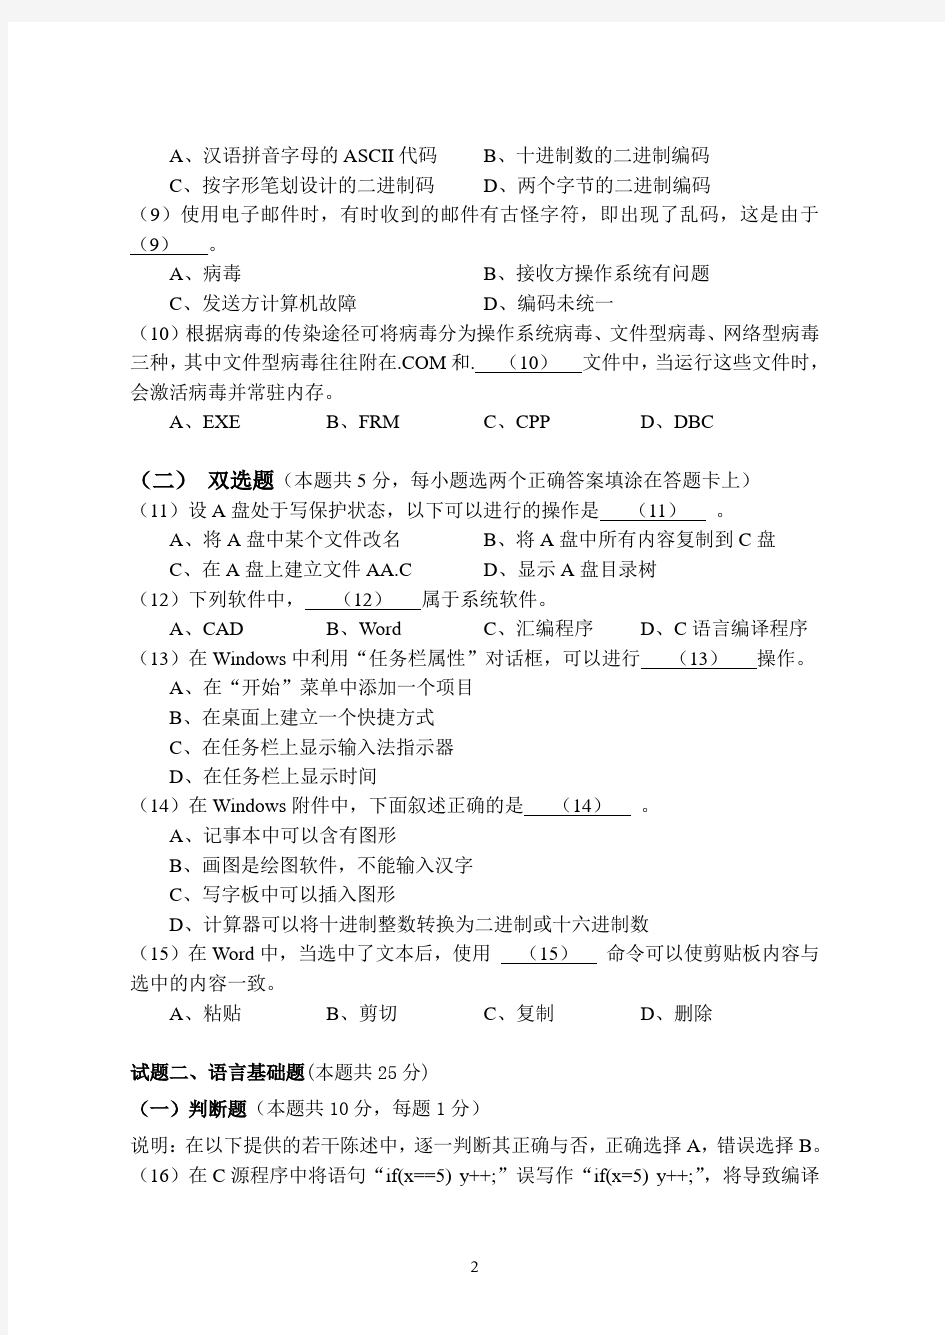 2001年秋浙江省高校计算机等级考试试卷 (二级C)及答案